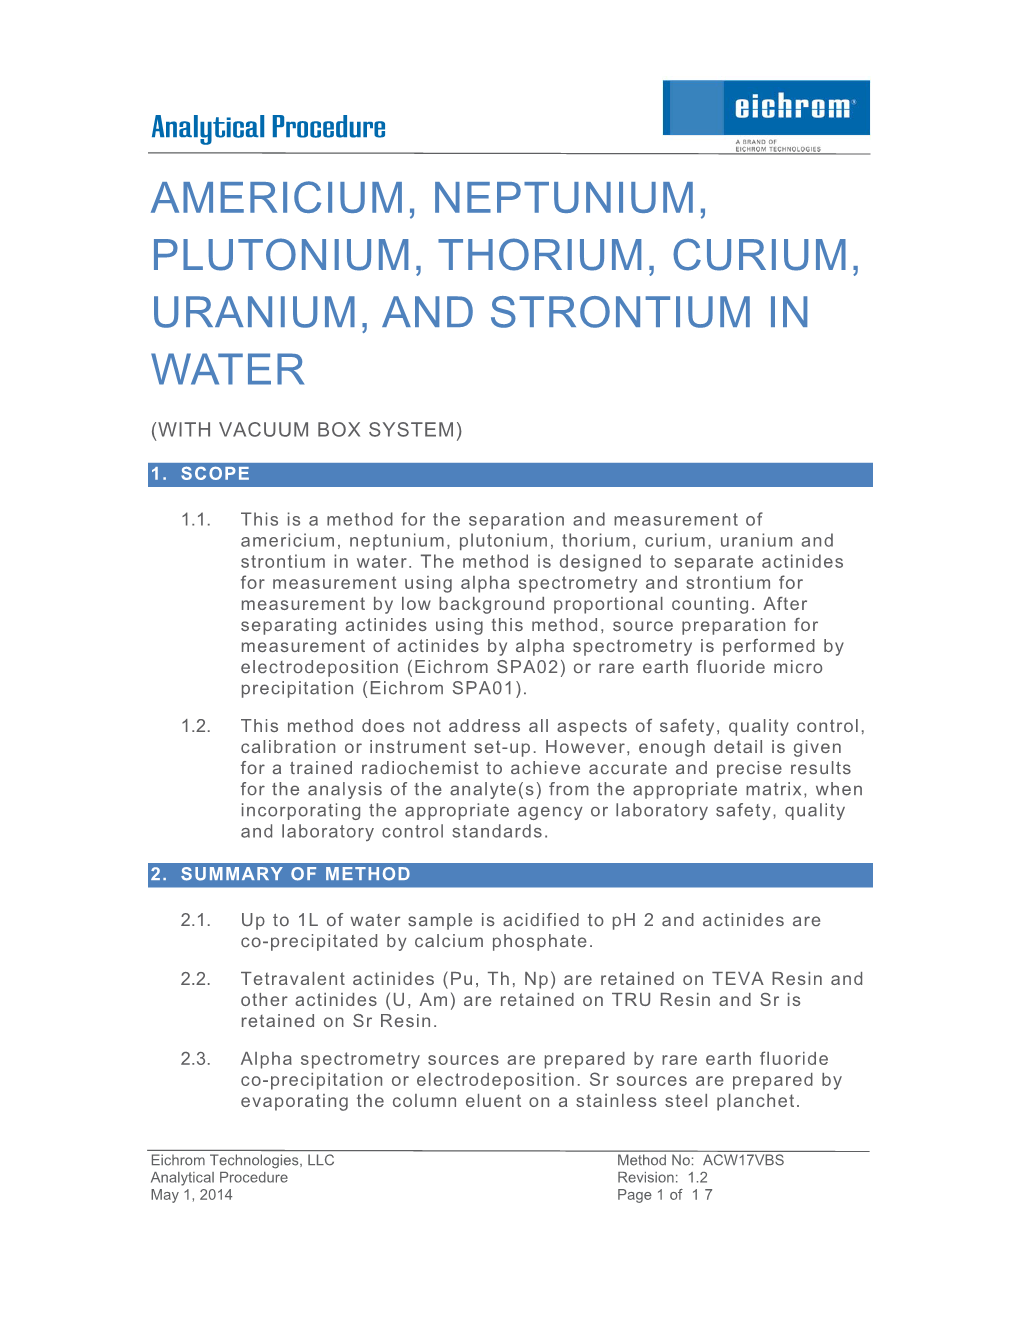 Americium, Neptunium, Plutonium, Thorium, Curium, Uranium, and Strontium in Water